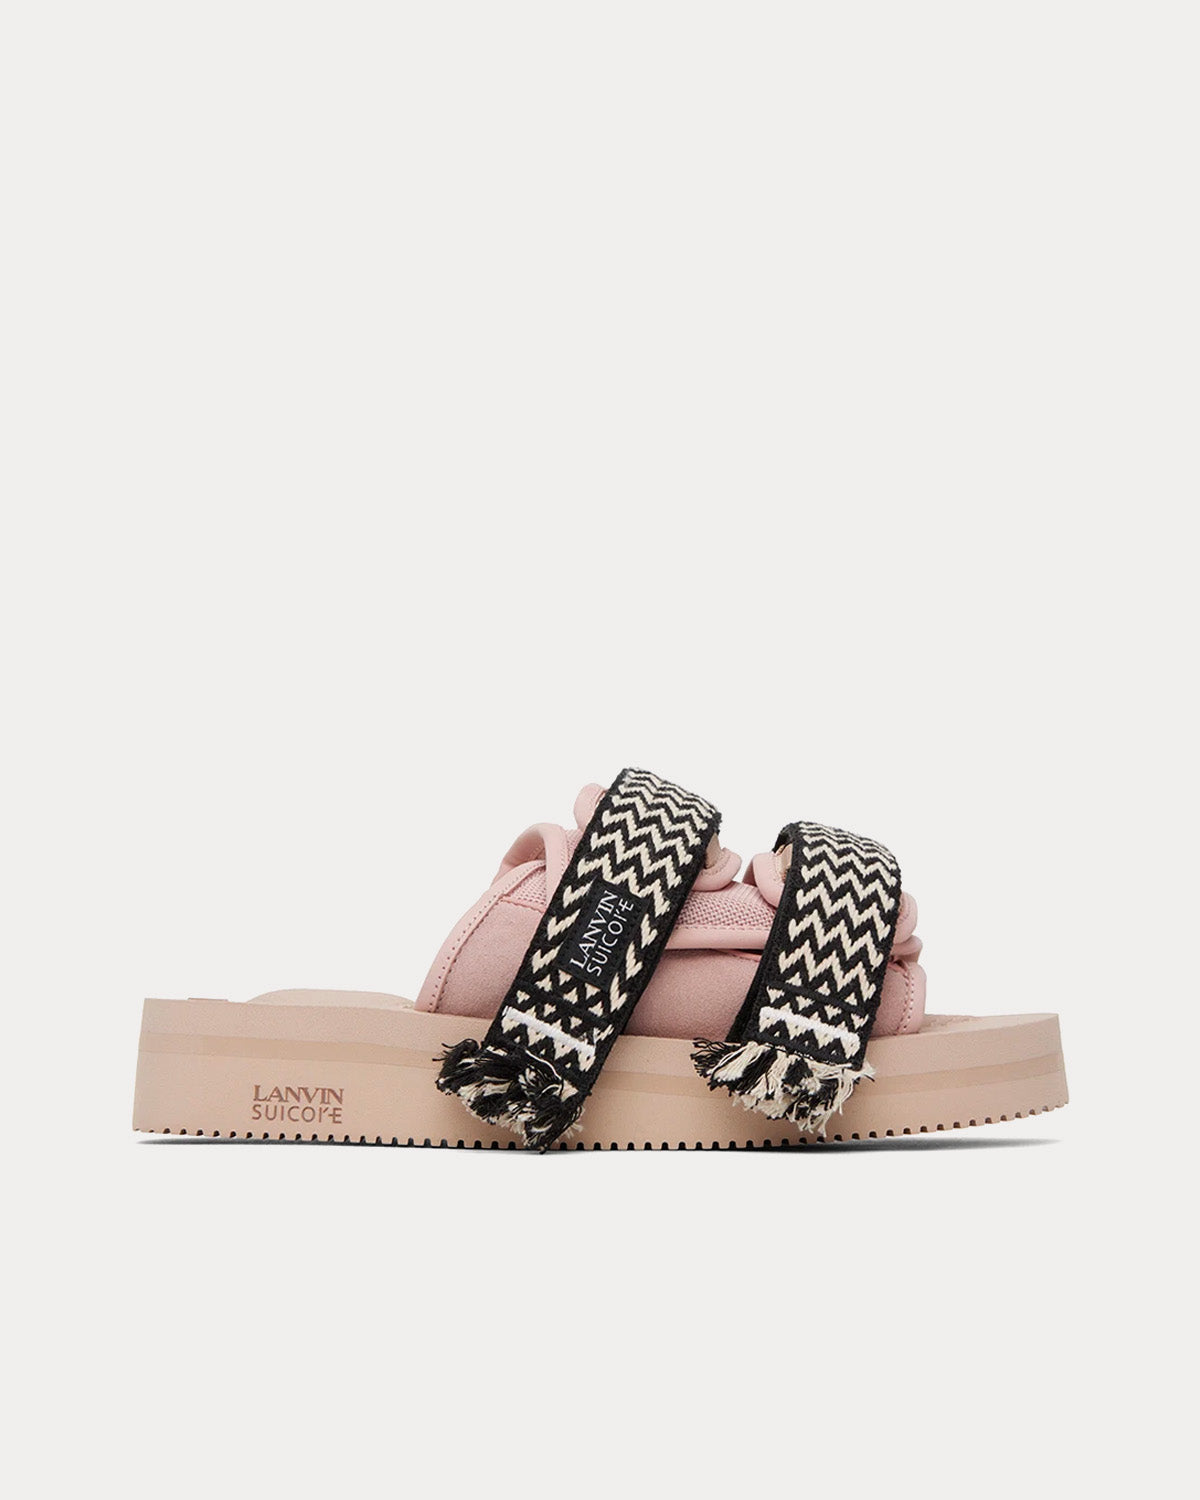 Lanvin x Suicoke - Pale Pink Nubuck Sandals